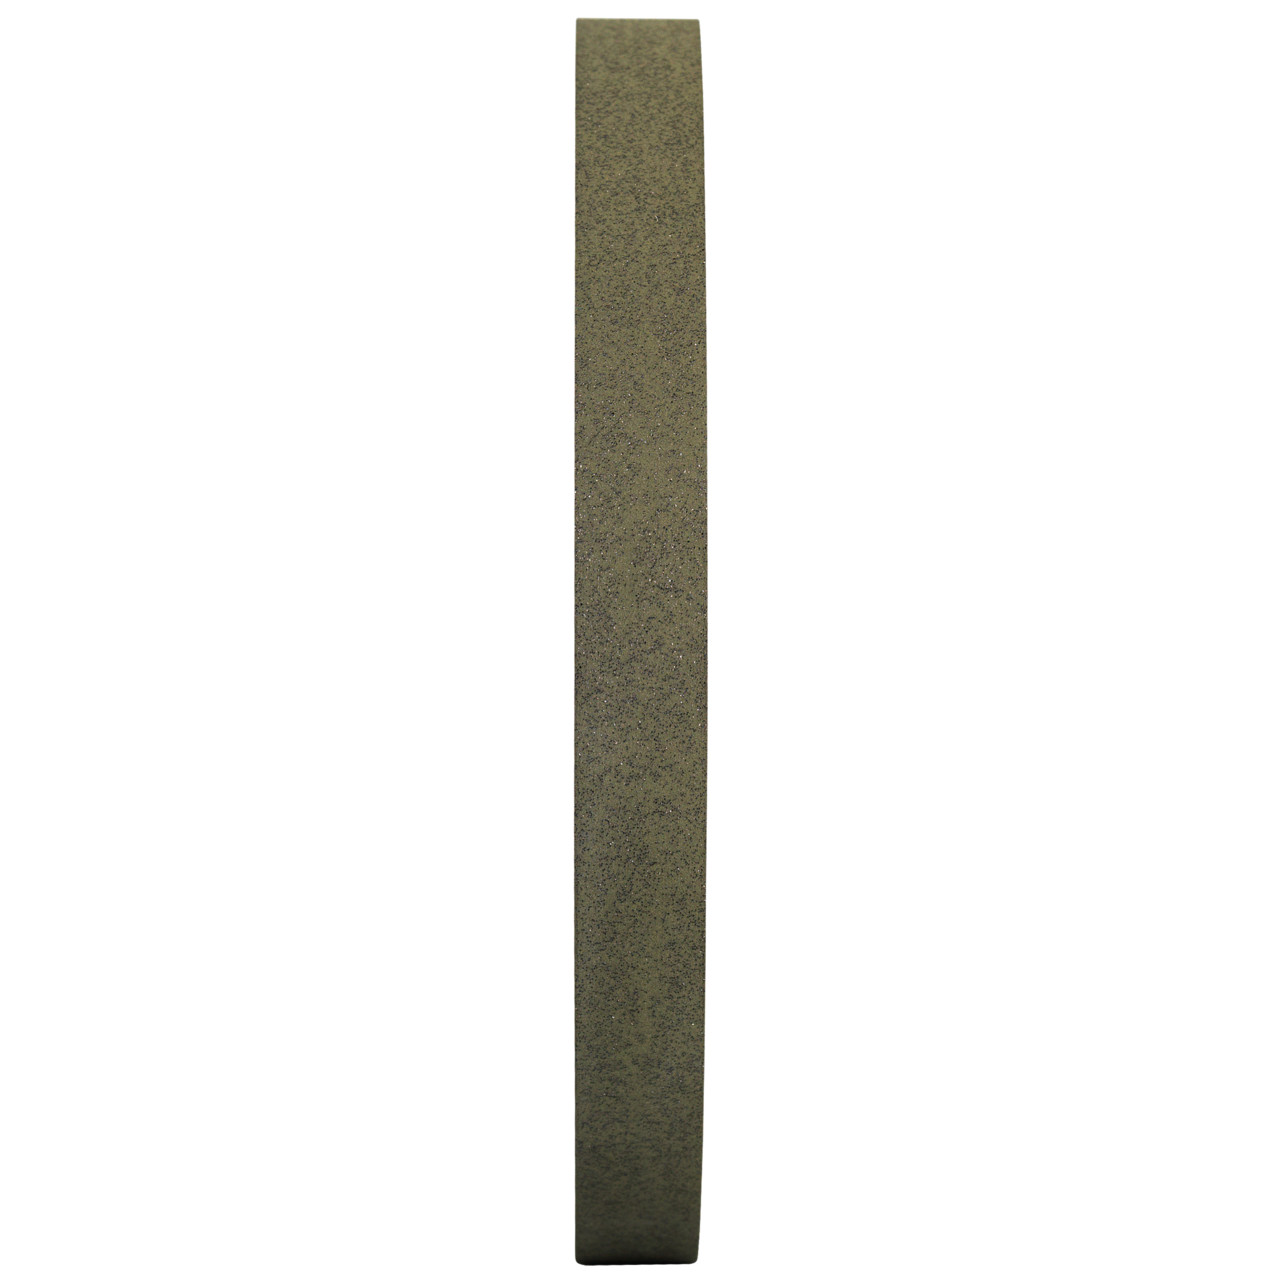 TYROLIT Kunstharzgebunden CBN für den Trockenschliff DxTxH 100x10x20 Für un- und niedriglegierte Stähle, hochlegierte Stähle und HSS., Form: 1A1, Art. 620464